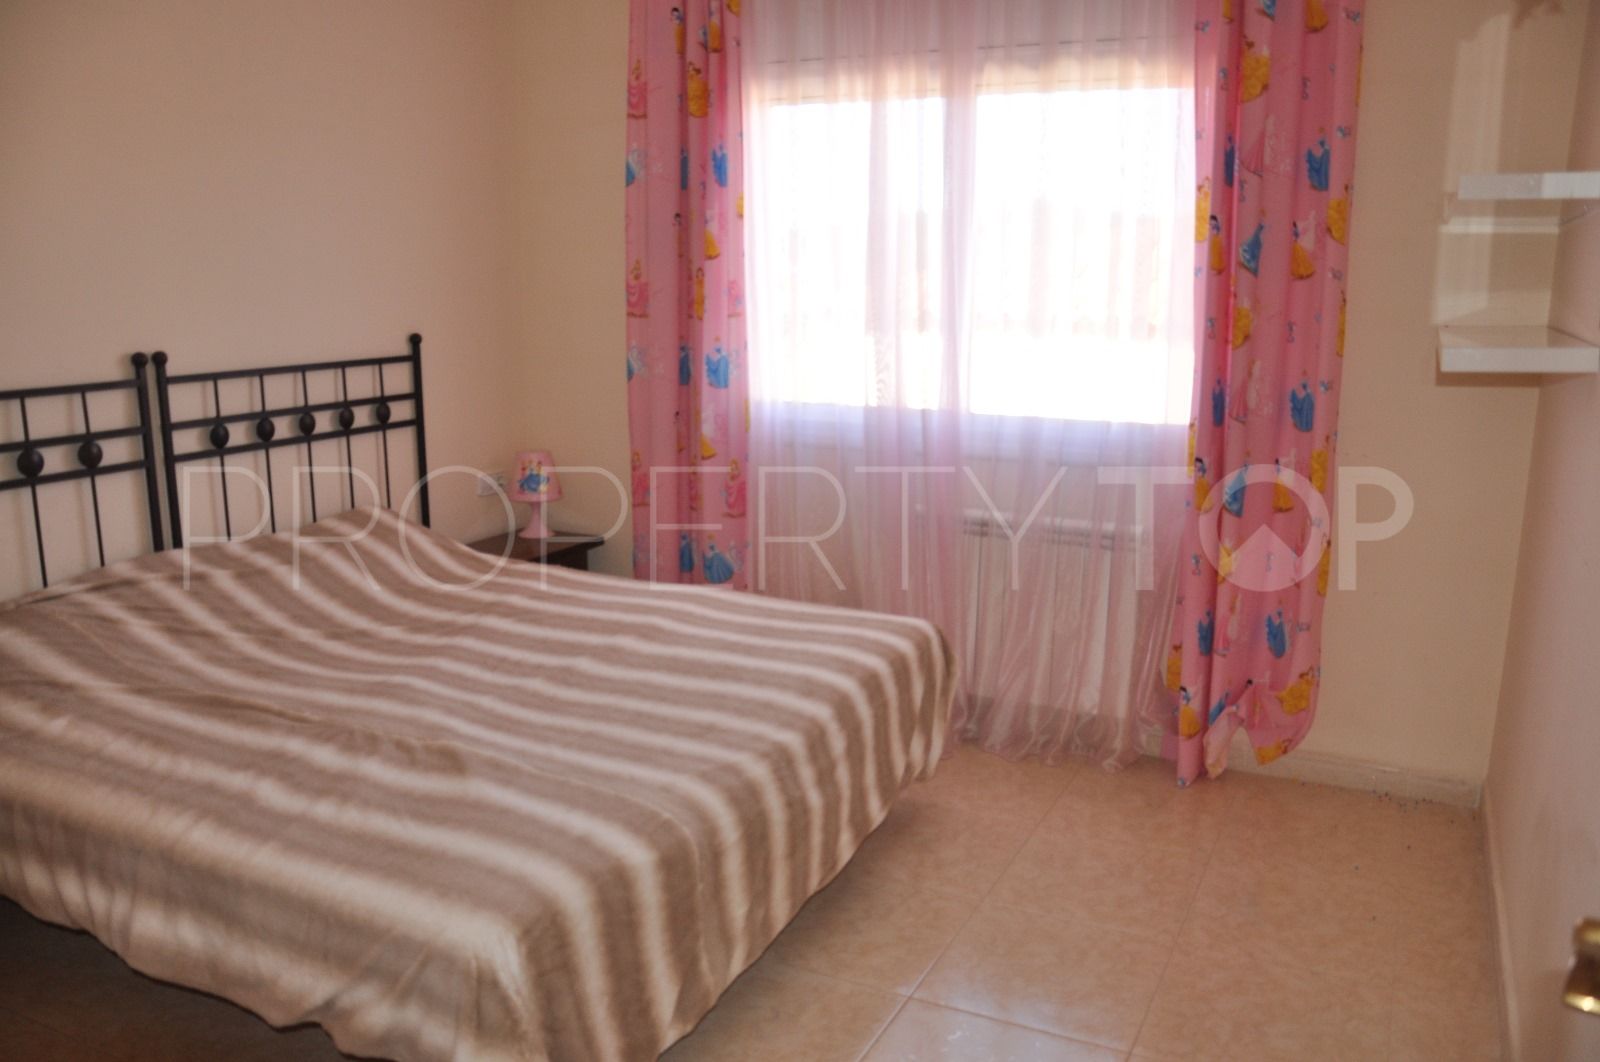 Comprar casa de 3 dormitorios en Golf Costa Brava - Bufaganyes